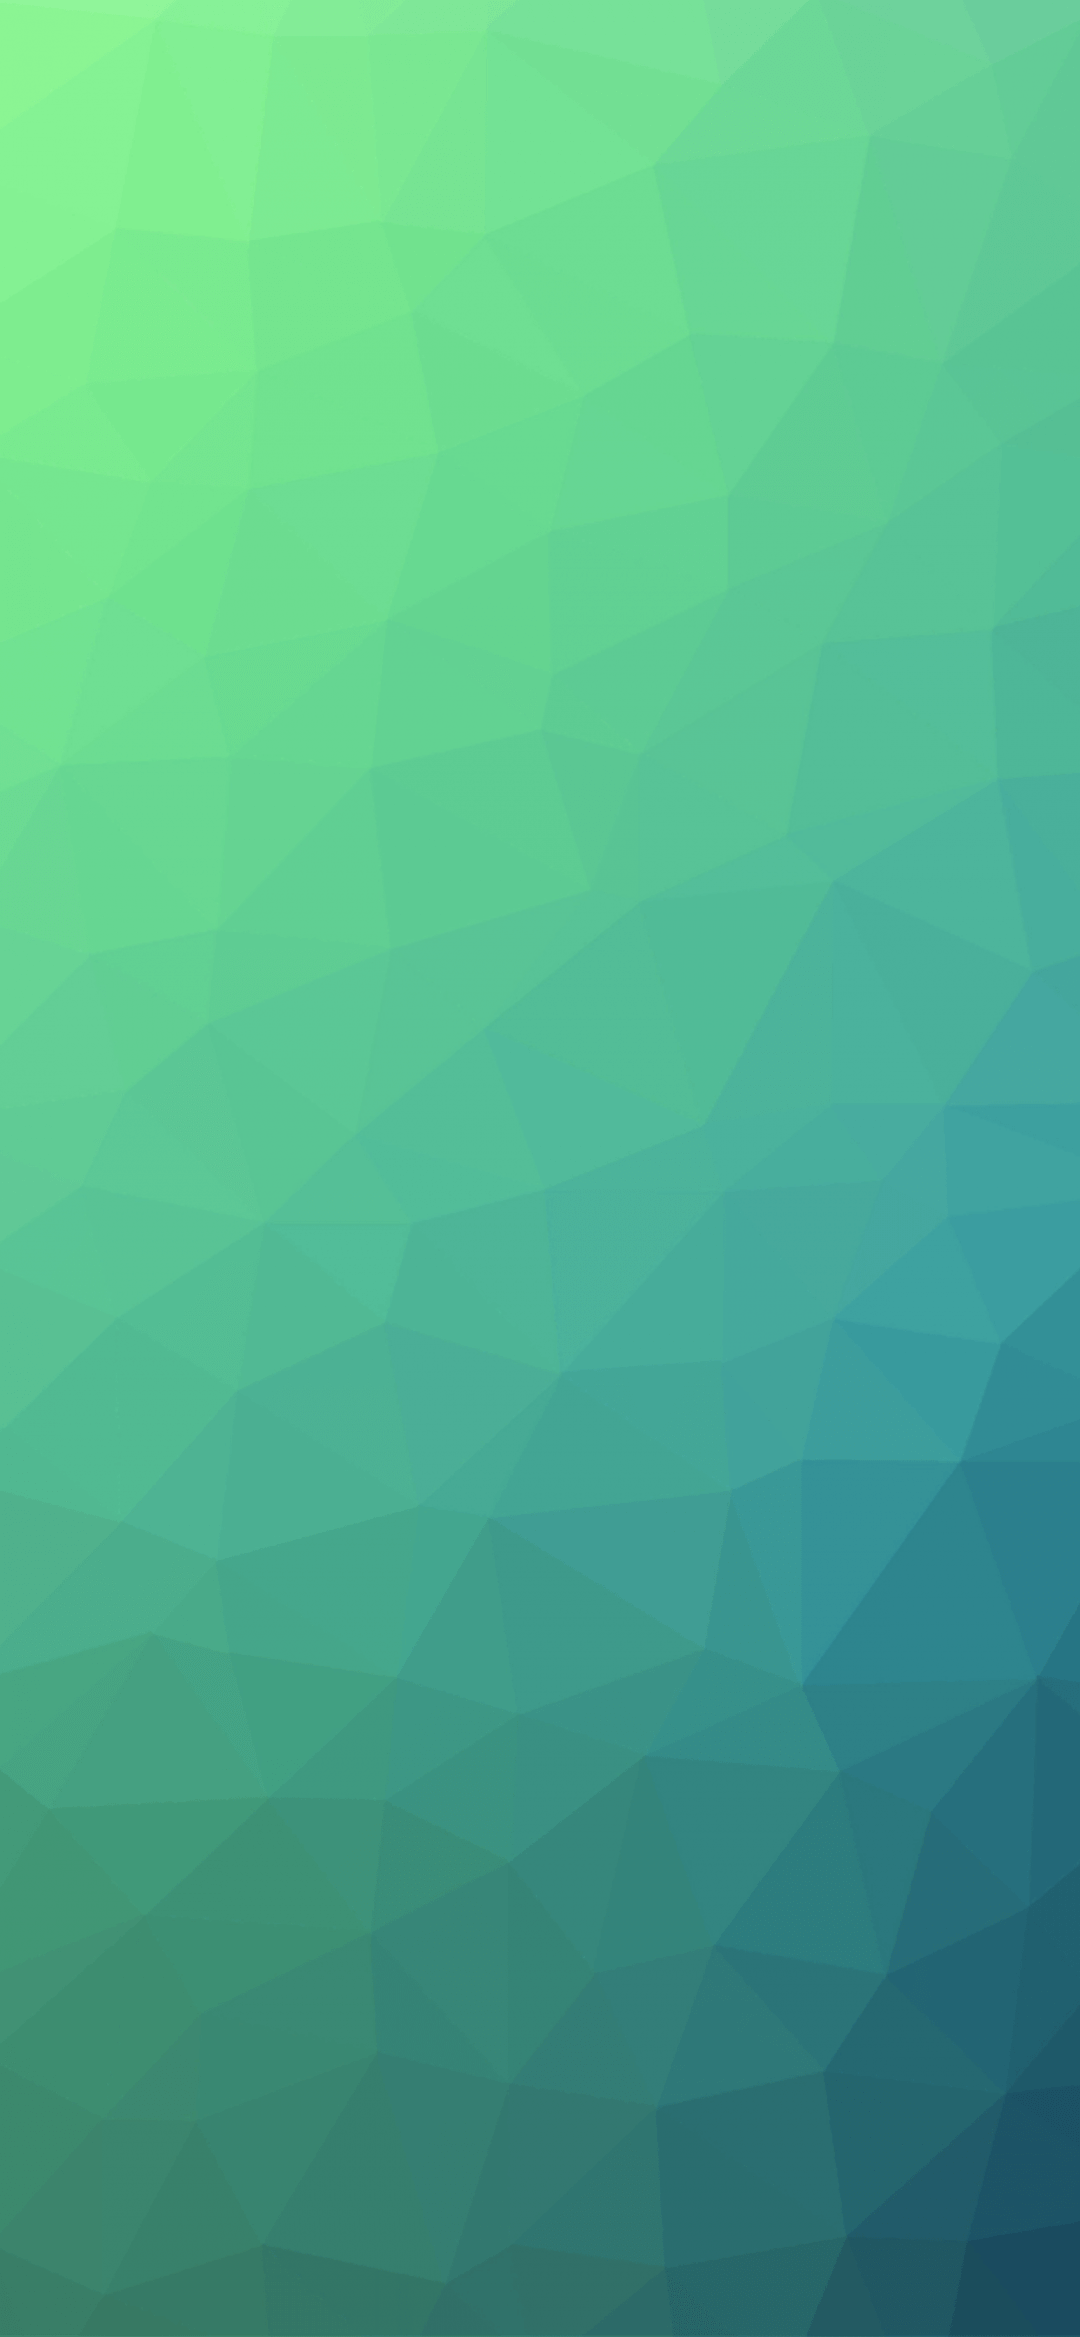 A gradient iPhone 6 wallpaper - Green, mint green